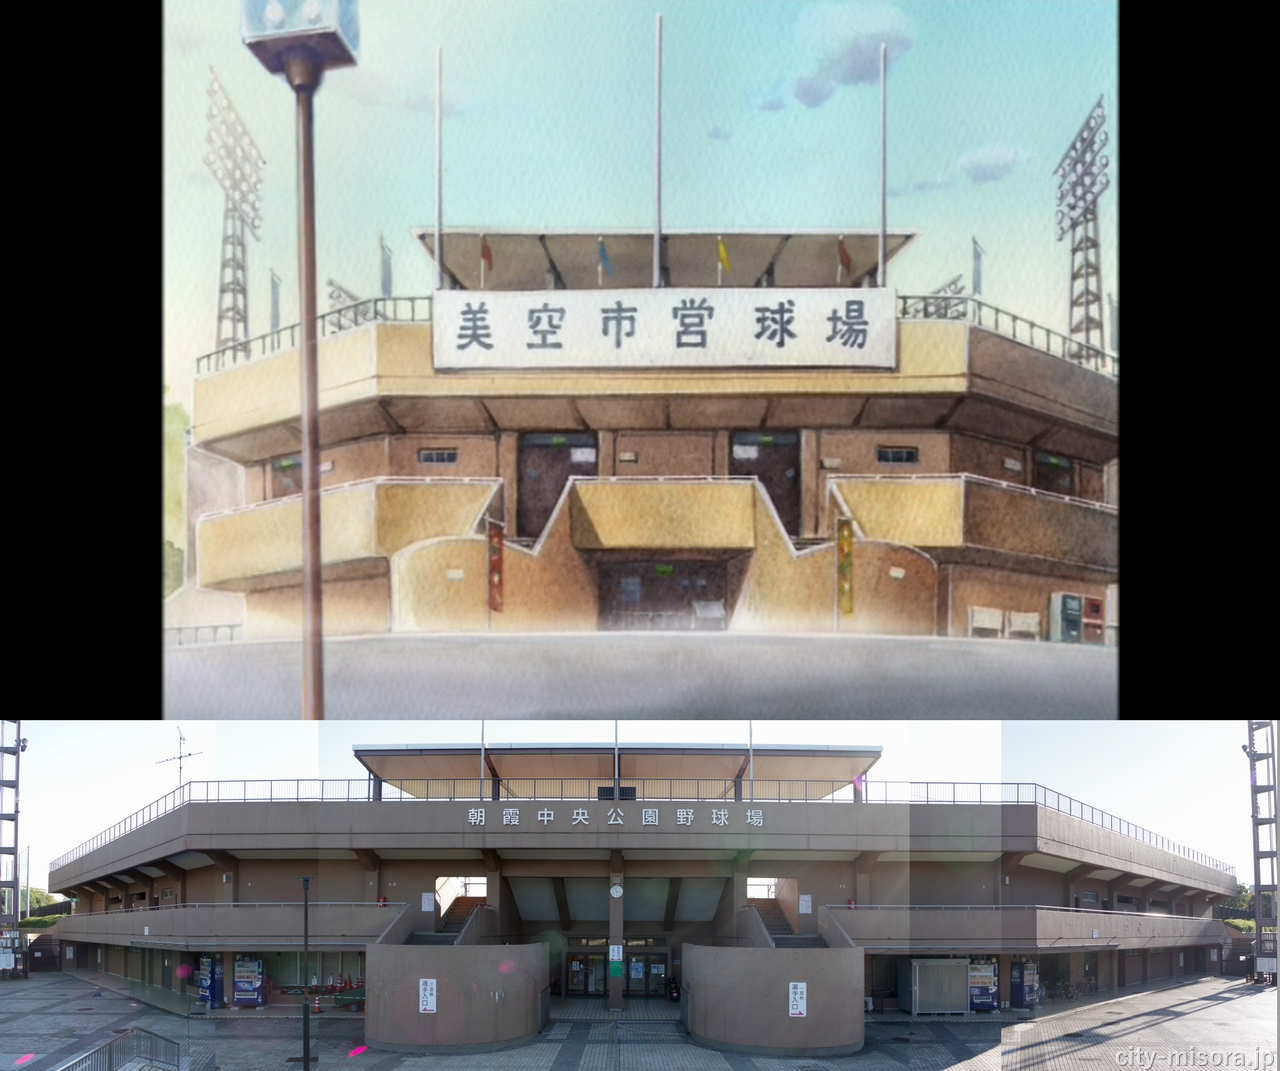 美空市営球場と朝霞市営球場の画像